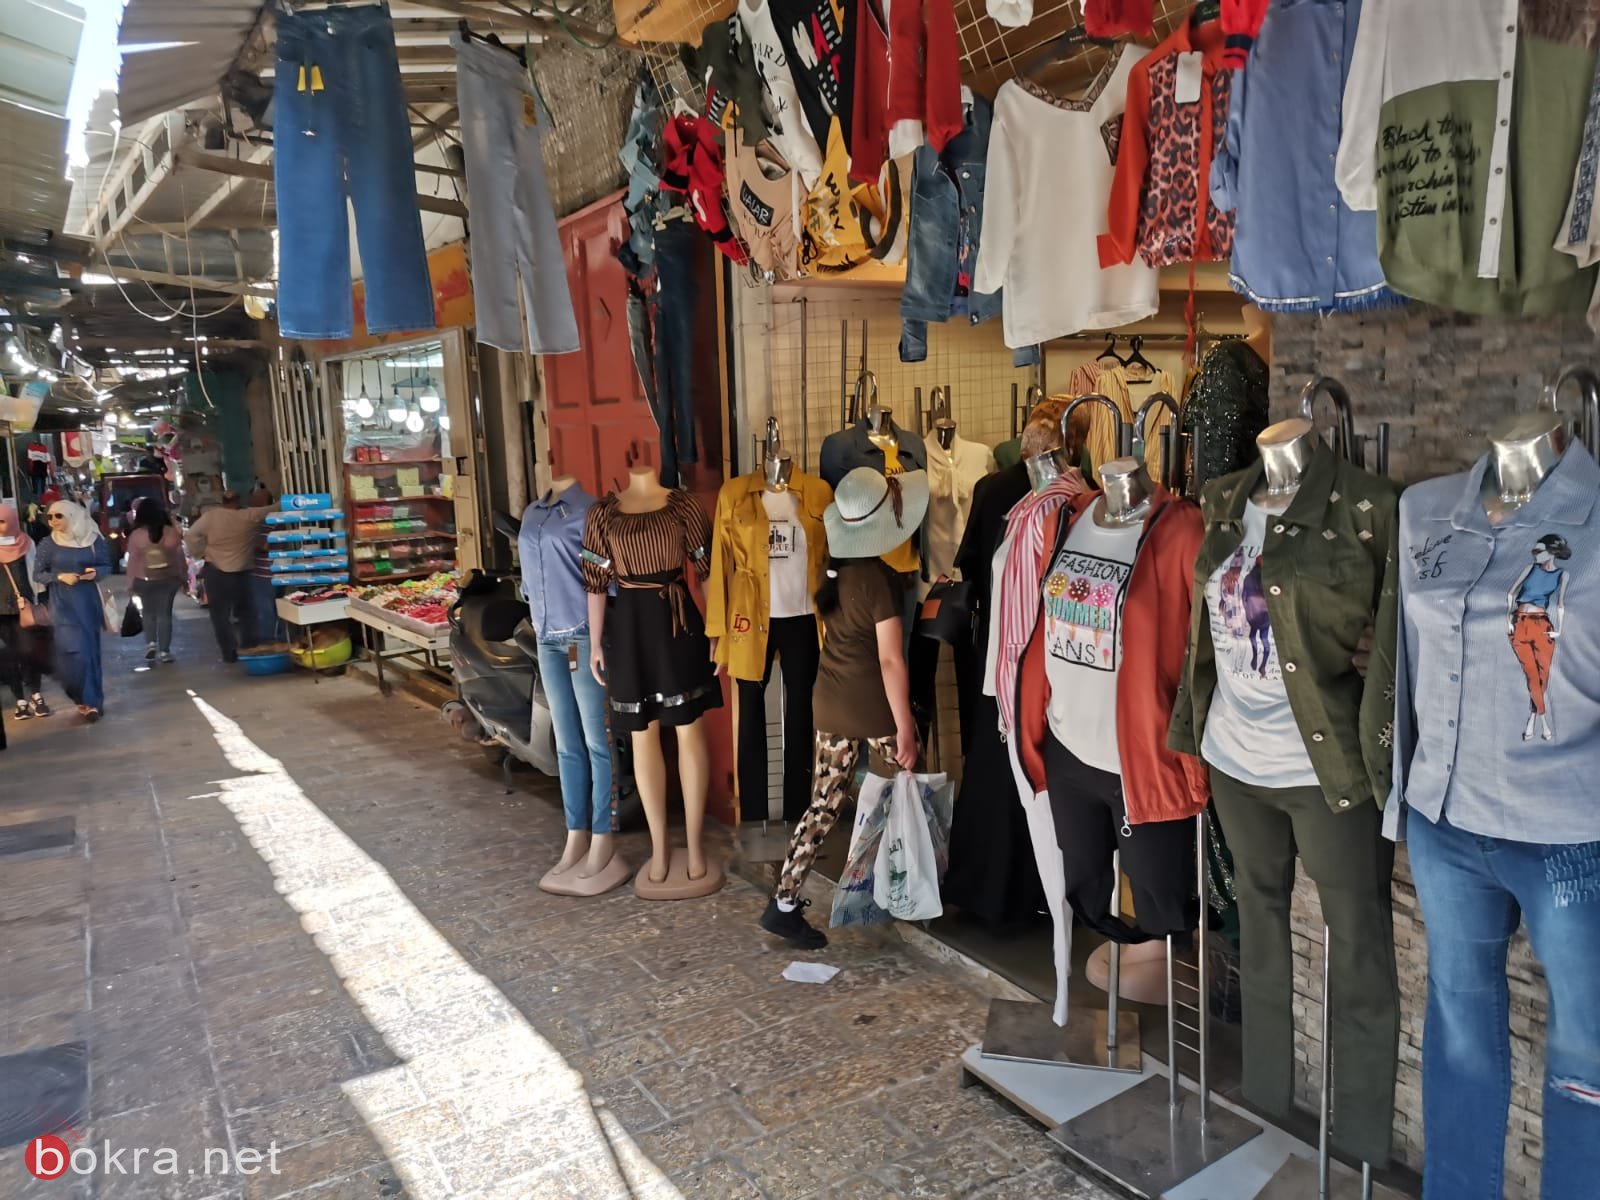   عشية العيد : أسواق القدس القديمة حزينة وخالية-14